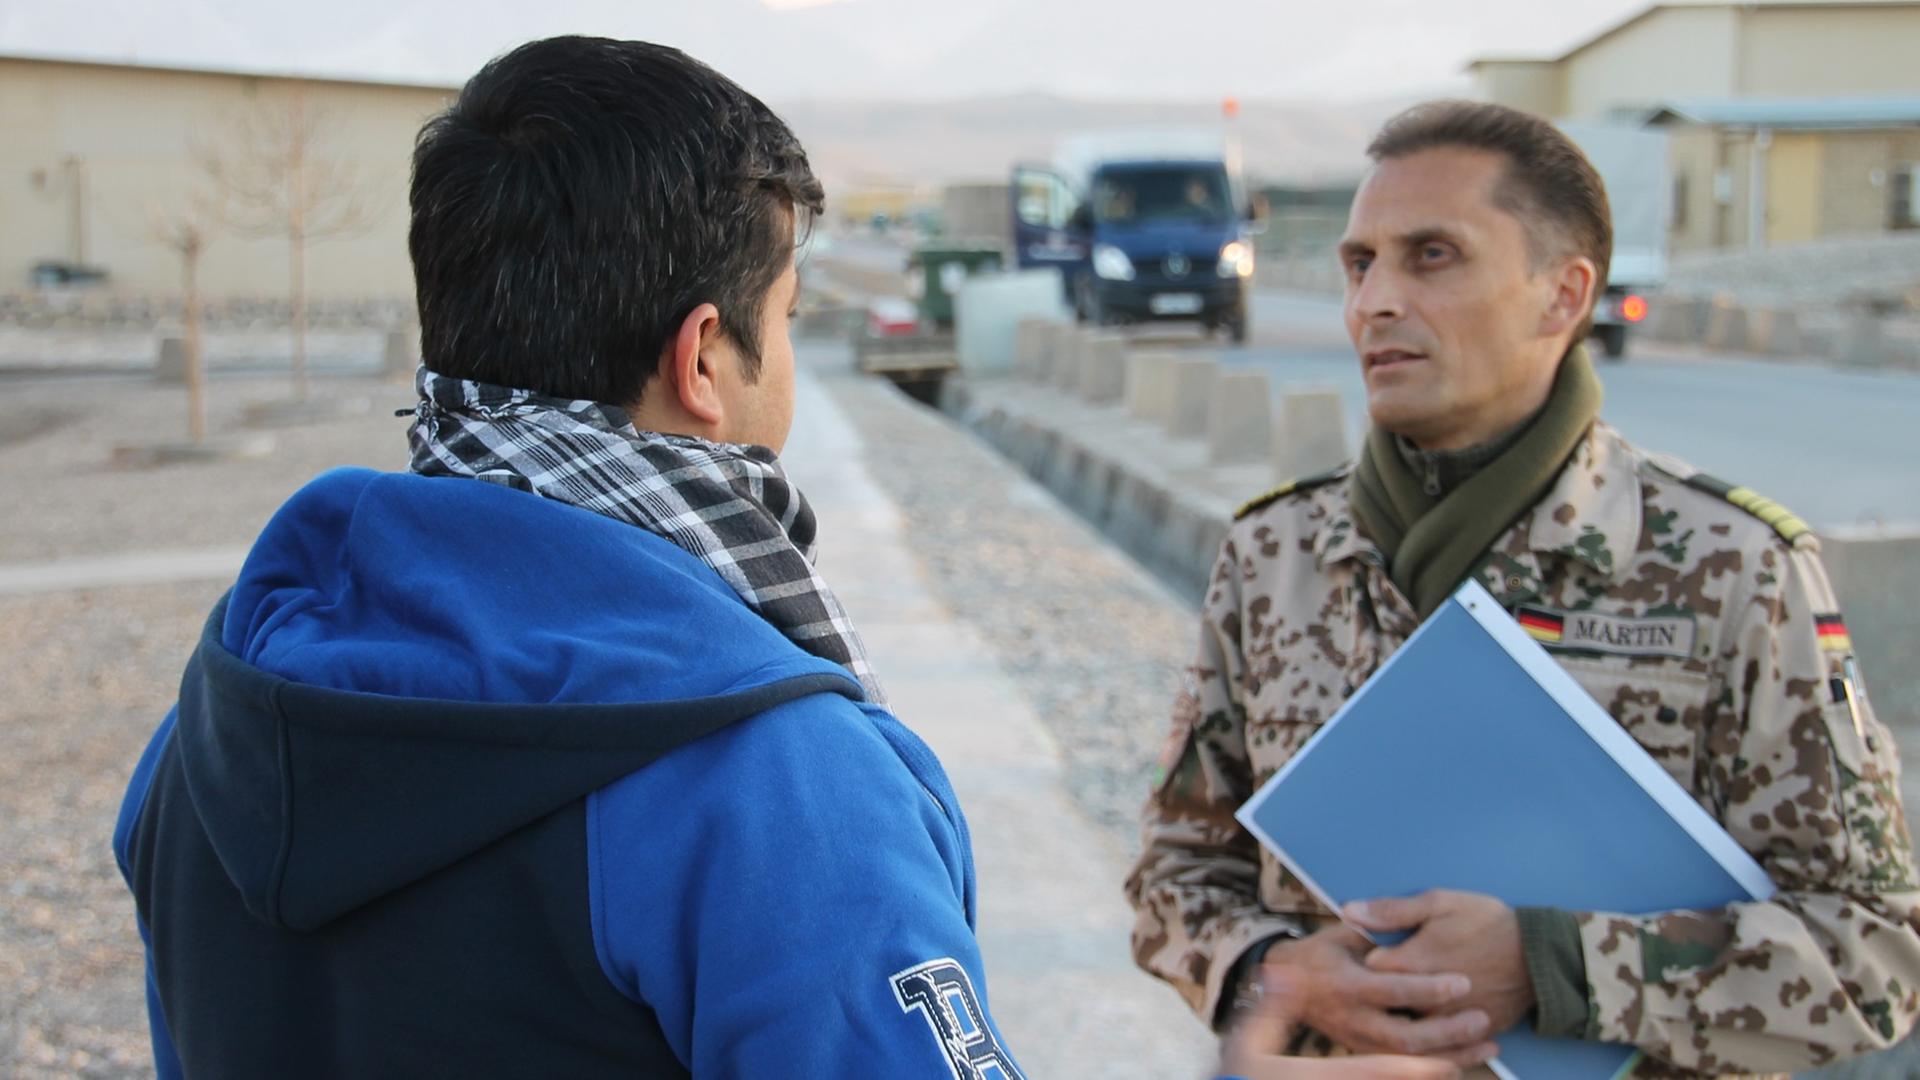 Afghanischer Helfer im Gespräch mit Bundeswehrangehörigem.